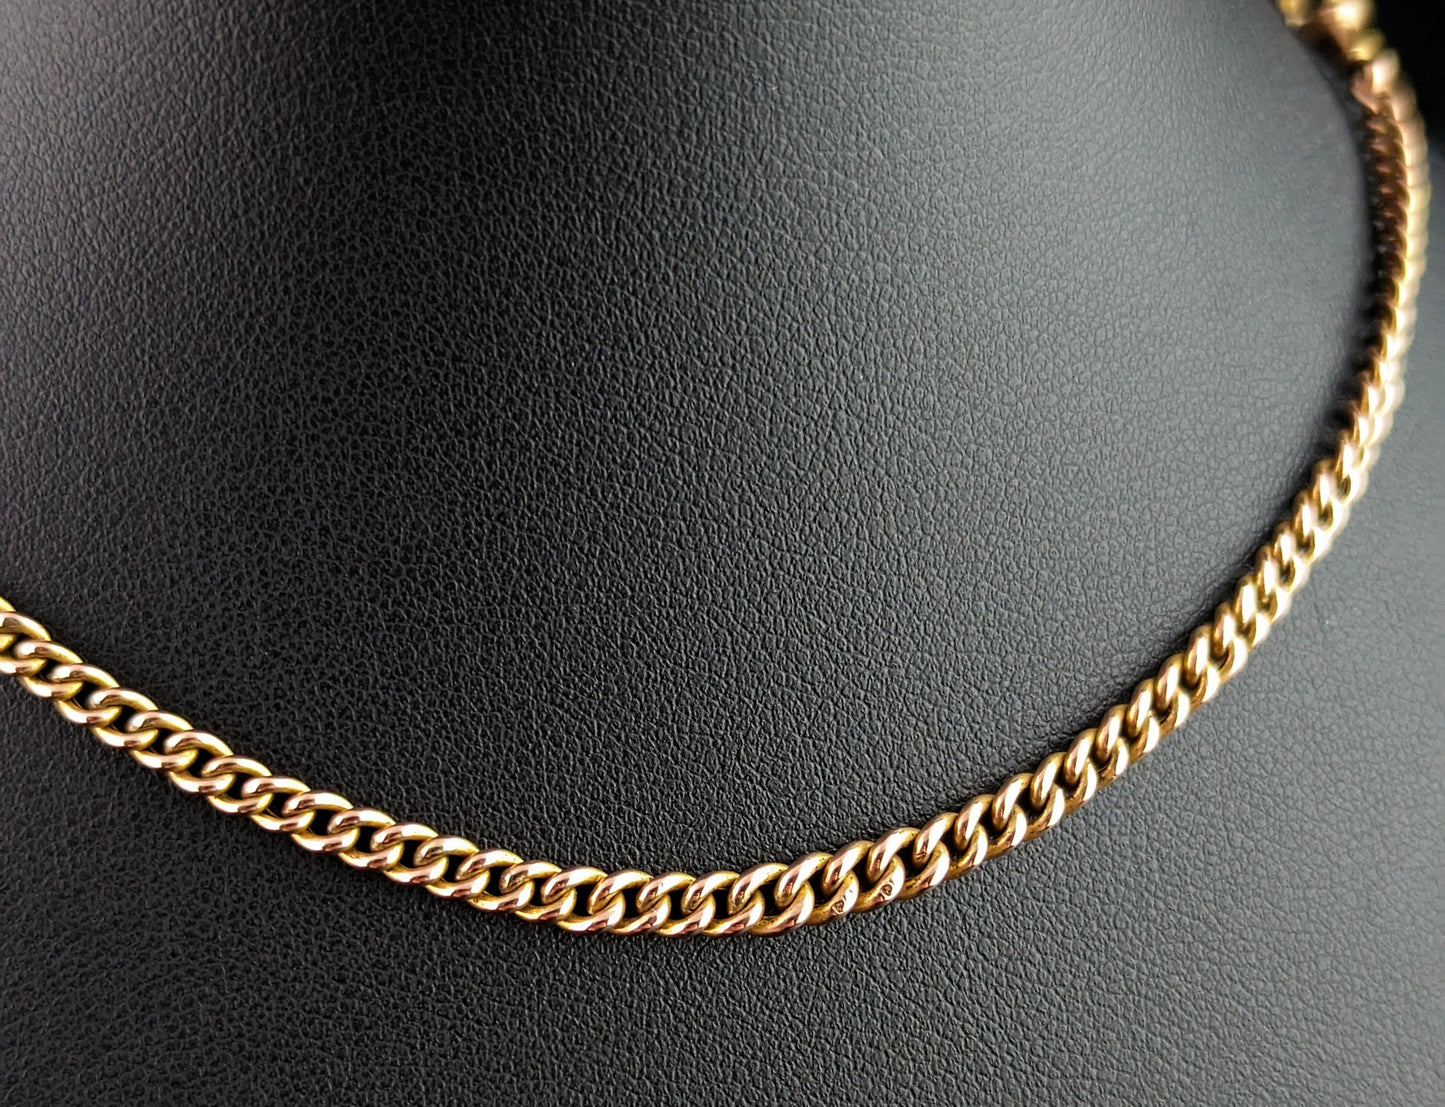 Antique 9ct gold Albert chain, watch chain, Art Deco